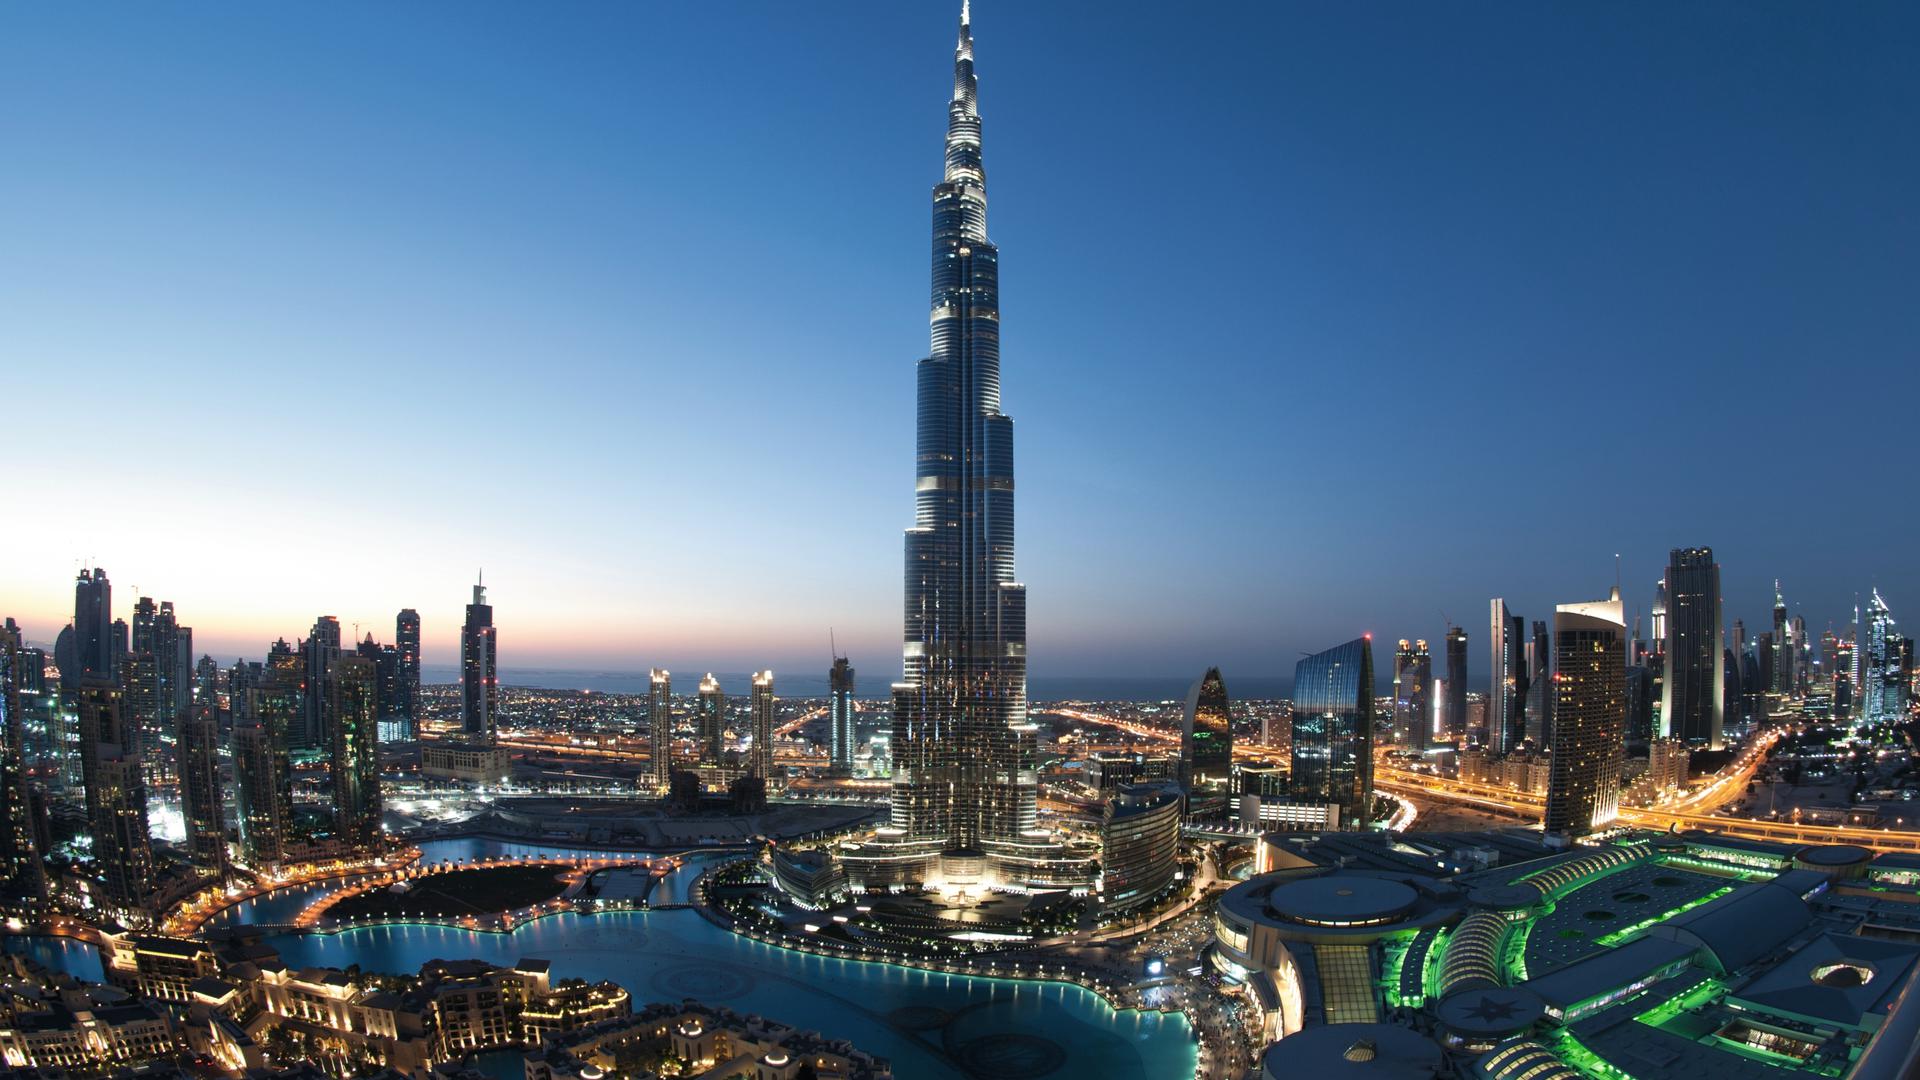 Zum Themendienst-Bericht von Philipp Laage vom 26. Januar 2017: Landgang-Klassiker in Dubai: Fahrt auf die Aussichtsplattform des Burj Khalifa. 